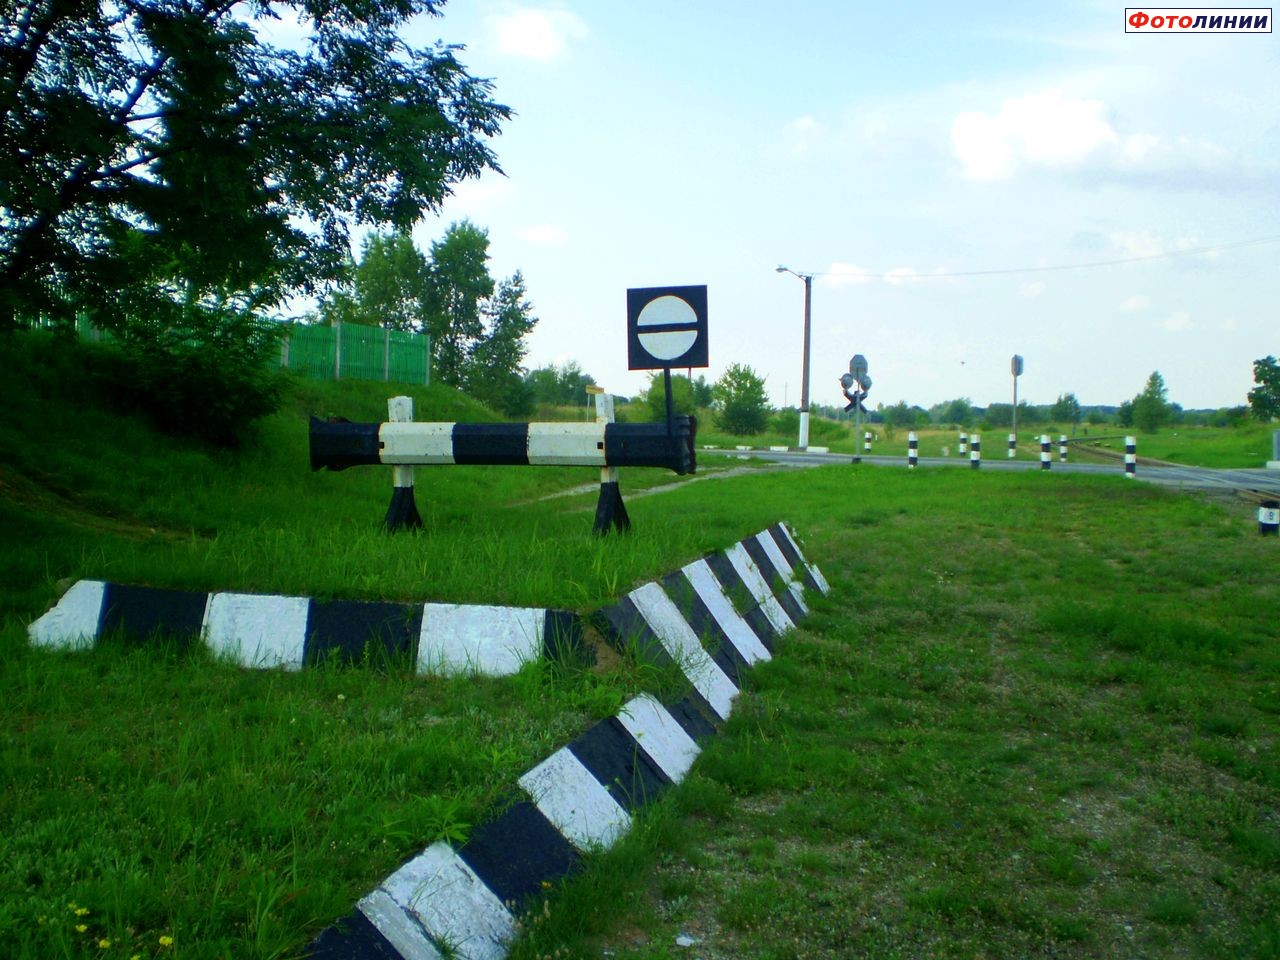 Тупик пути европейской колеи в парке Заречица